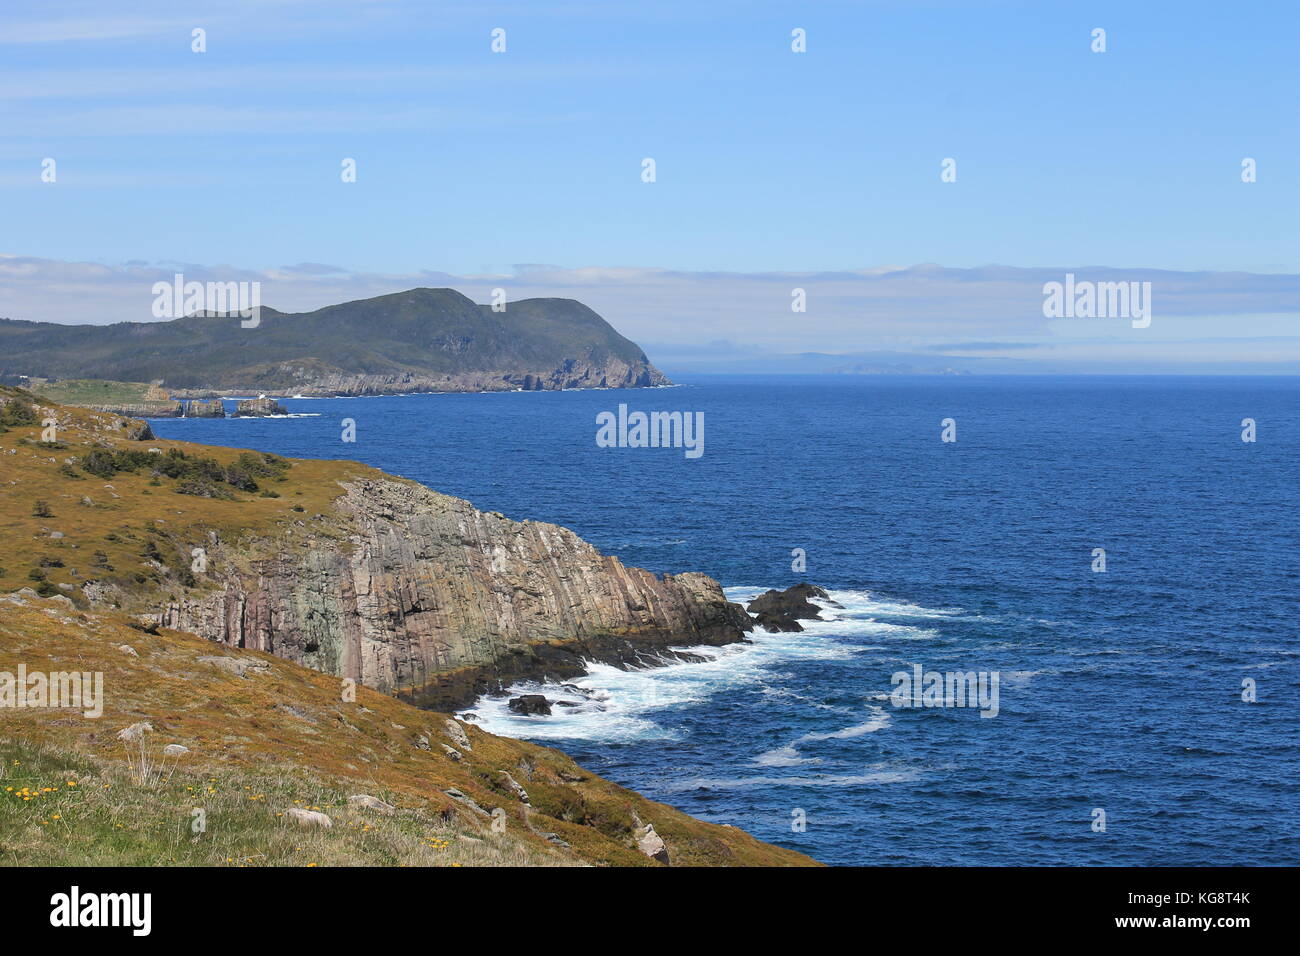 Vista panoramica dell'Oceano Atlantico e la città costiera di Ferryland e il Ferryland Downs, Terranova Labrador, Canada Foto Stock